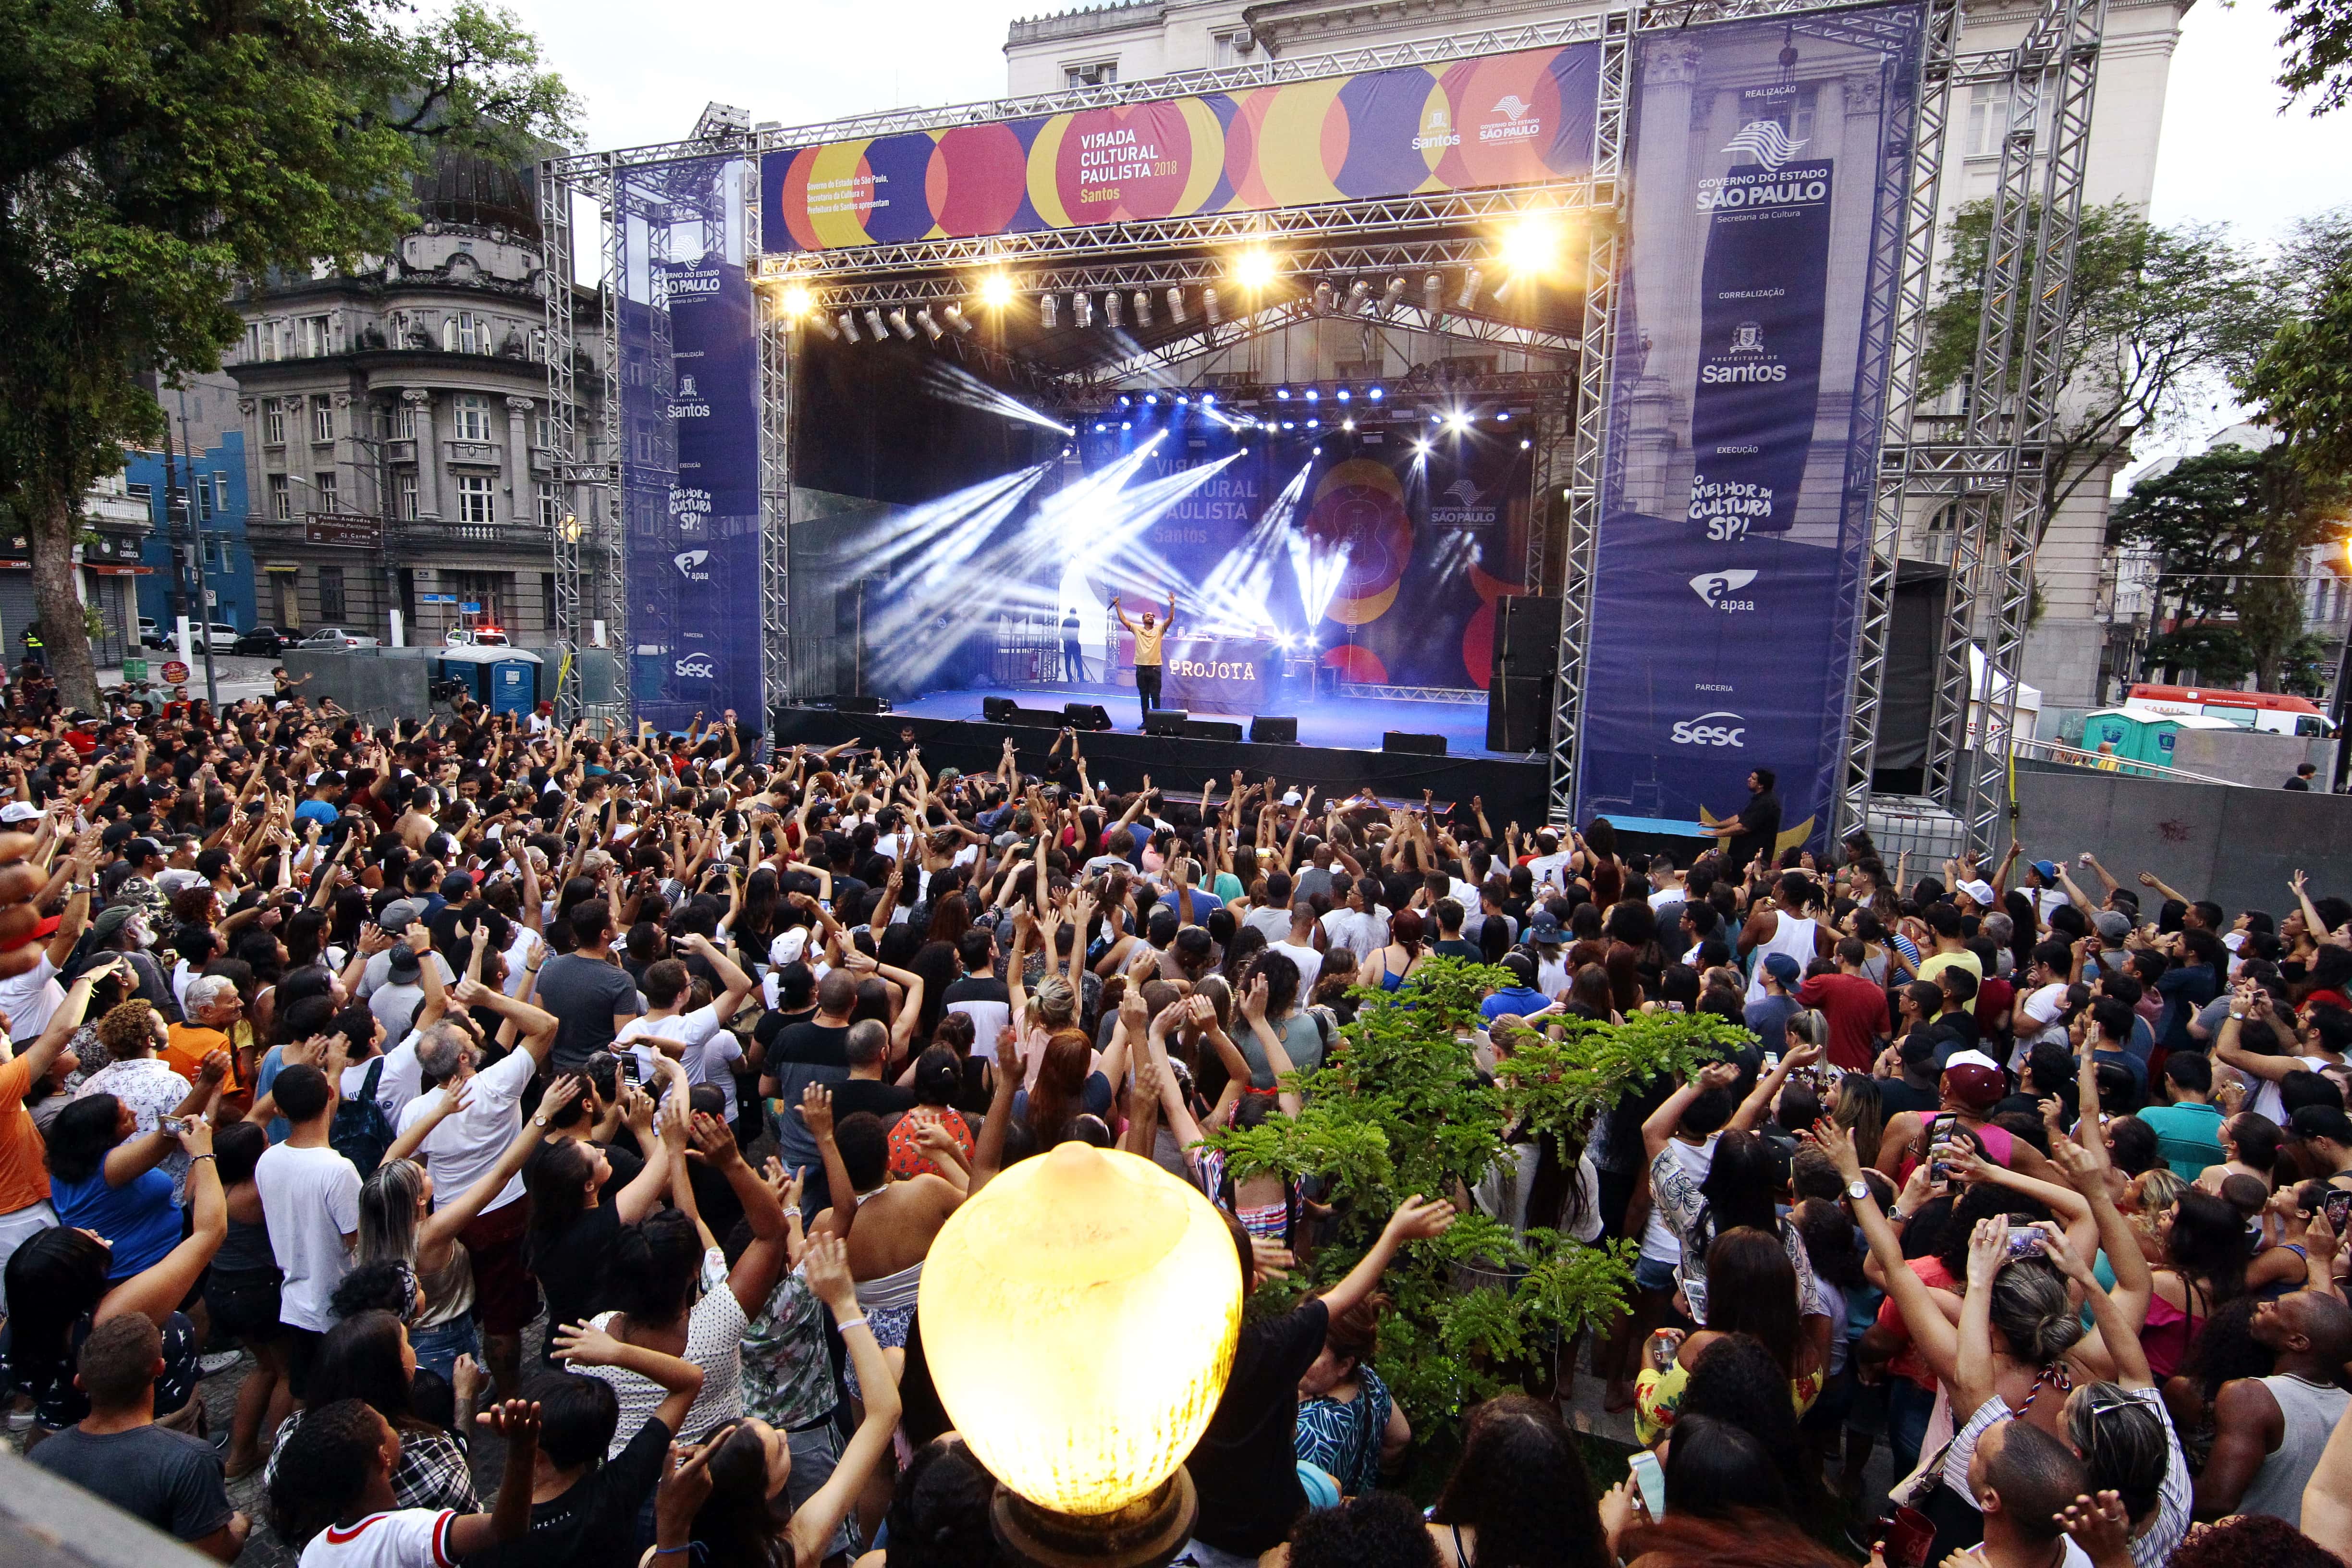 Desde 2007, Santos recebia 24 horas de shows pela Virada Cultural na Praça Mauá, no Centro Histórico